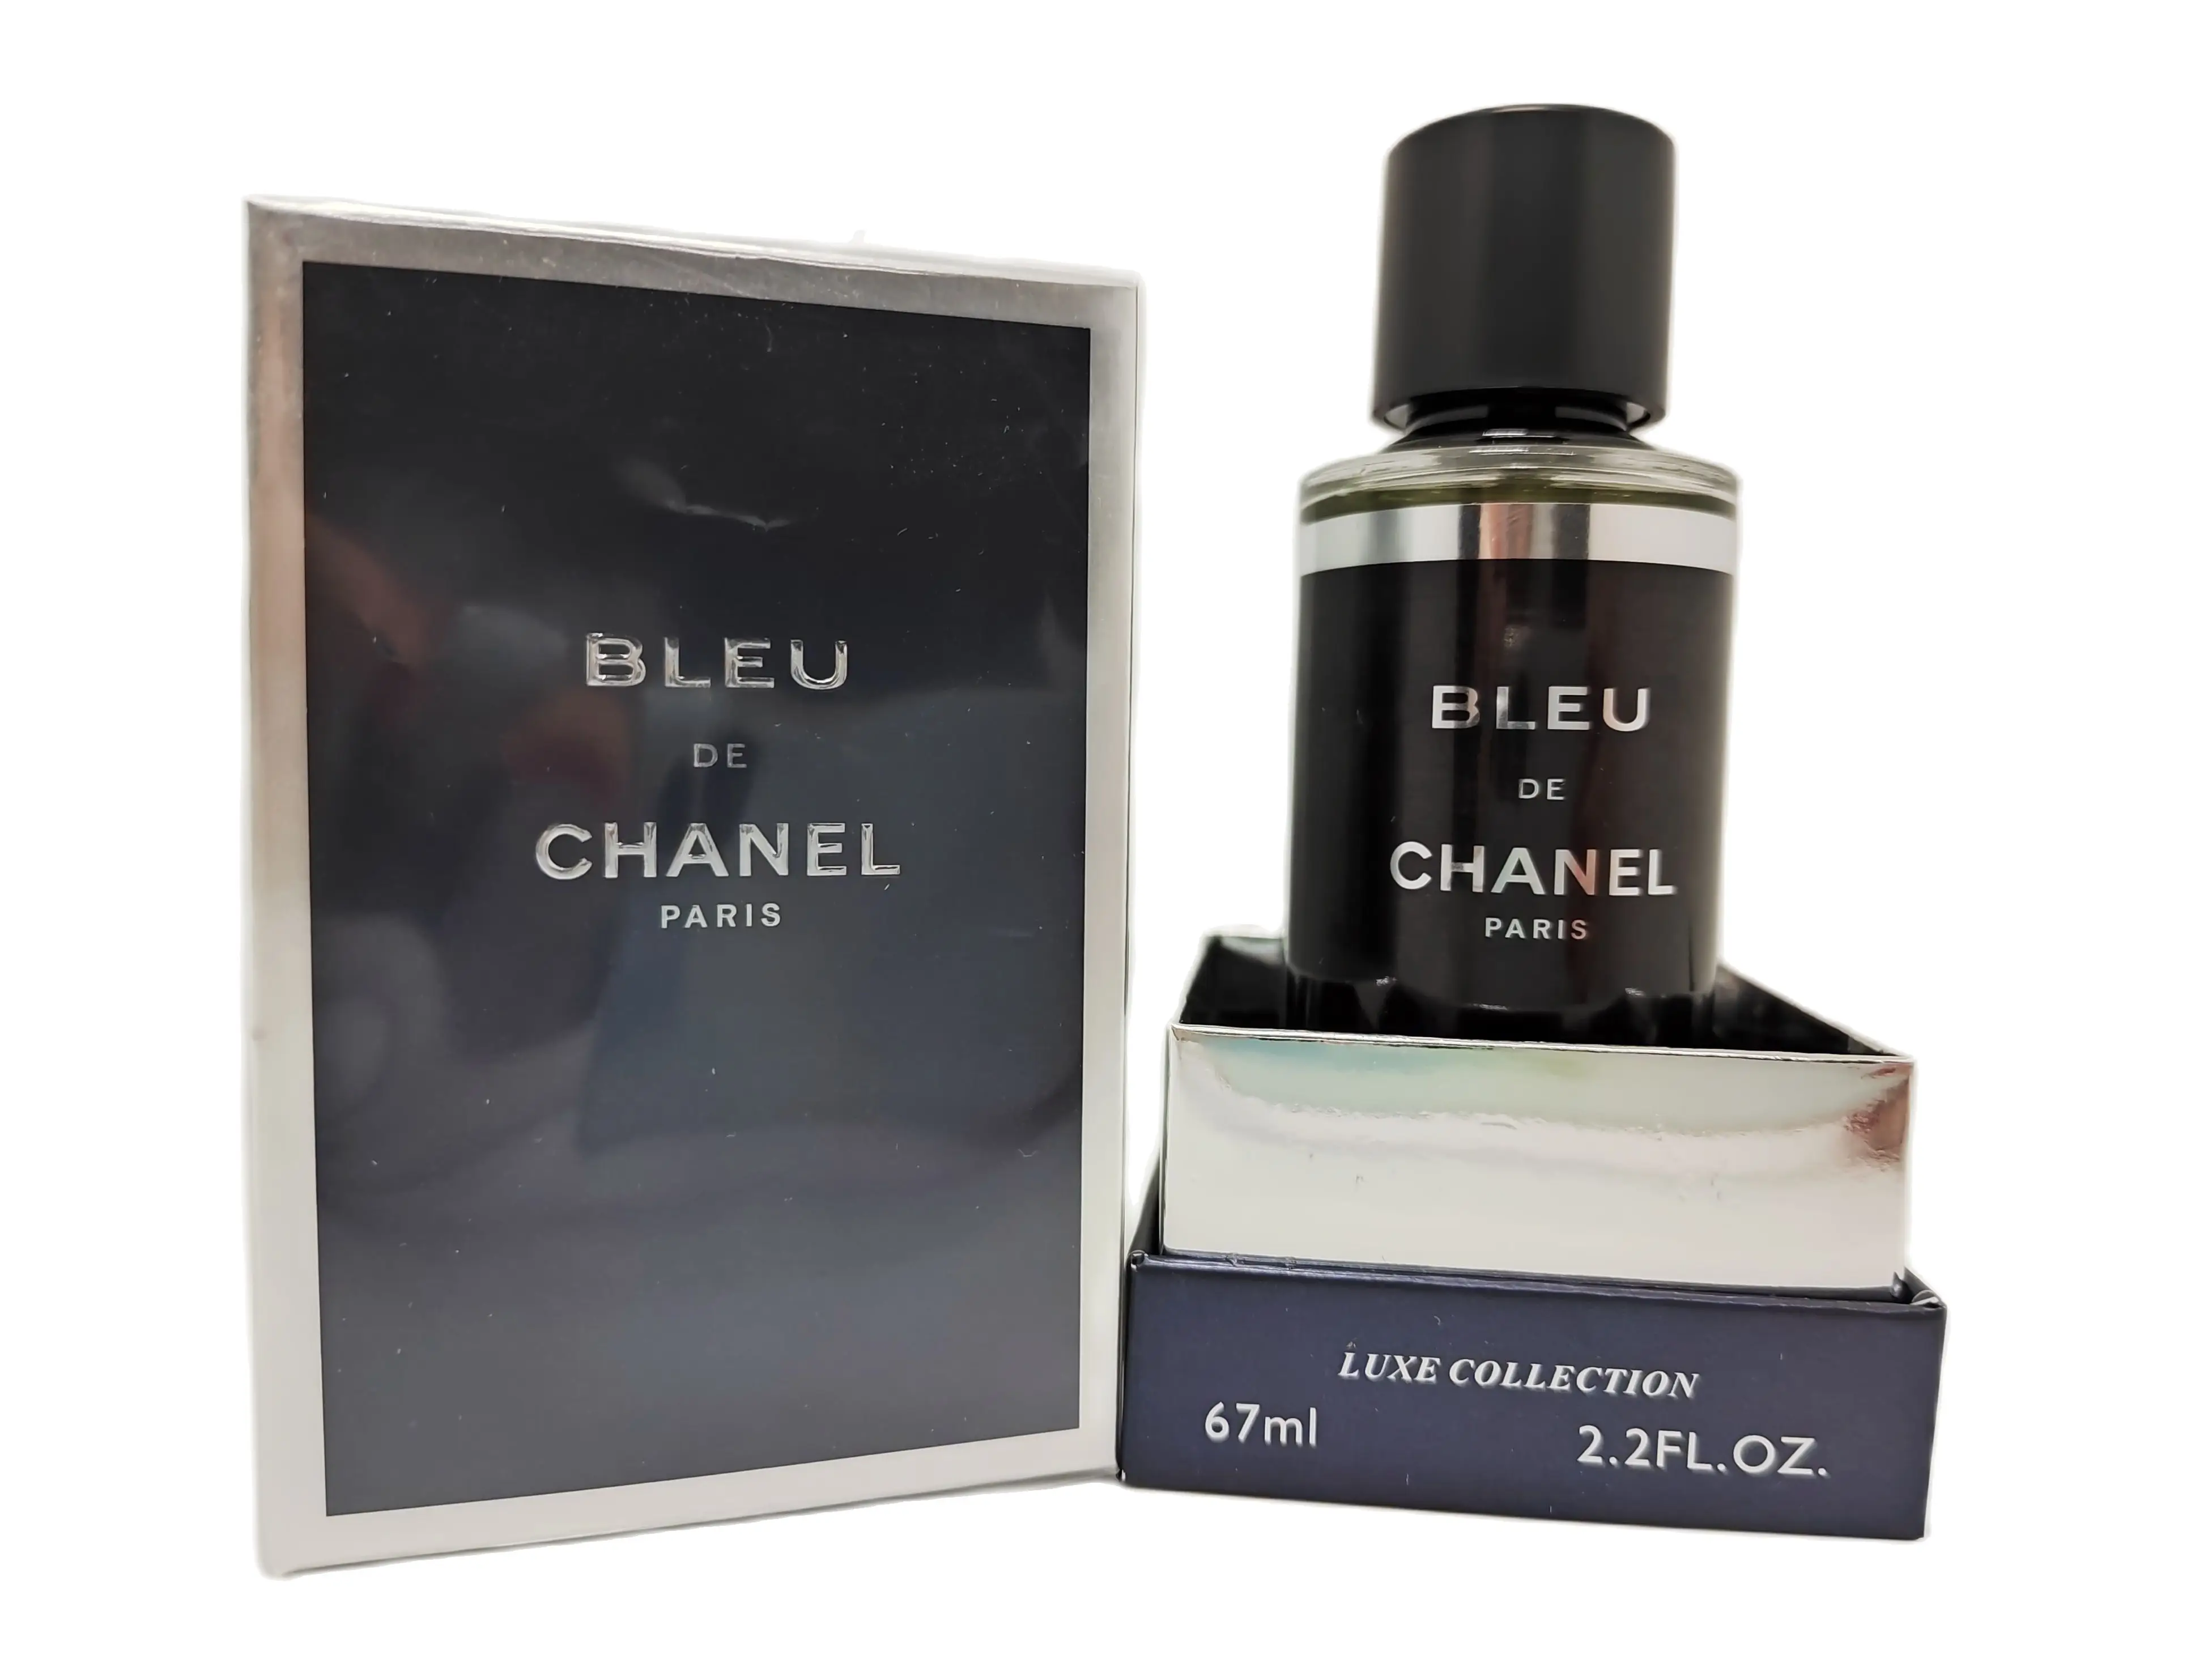 Купить духи Chanel Bleu De Chanel мужские  туалетная вода Блю Де Шанель  оригинал  цена описание аромата в интернетмагазине SpellSmellru